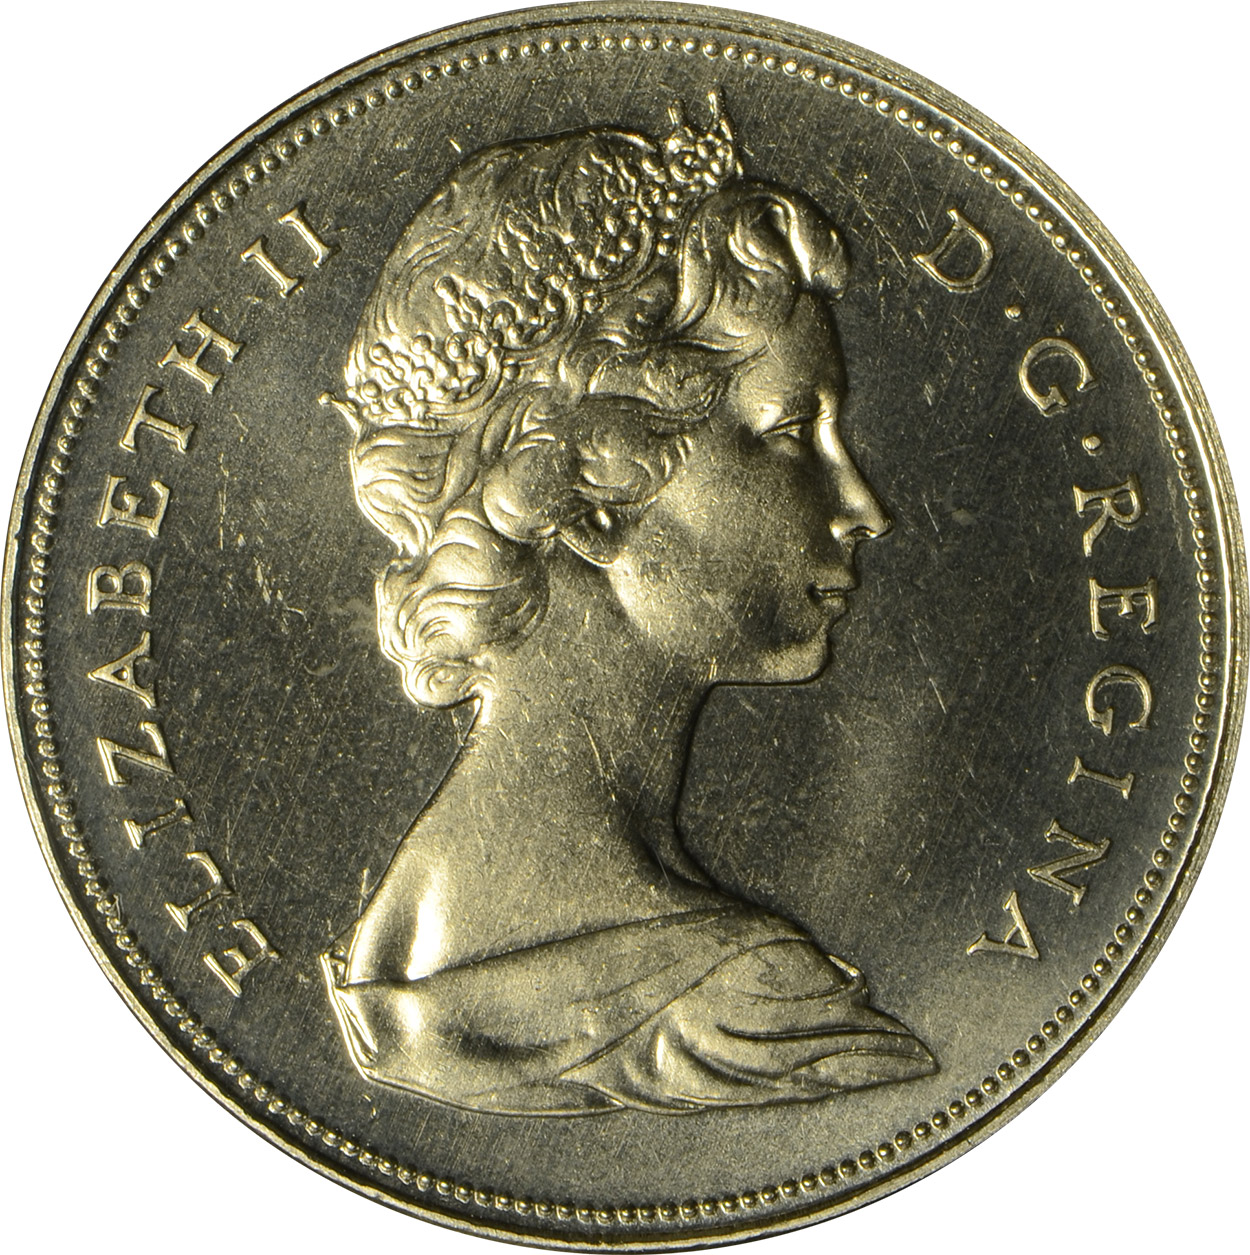 MS-60 - 1 dollar 1965 to 1989 - Elizabeth II